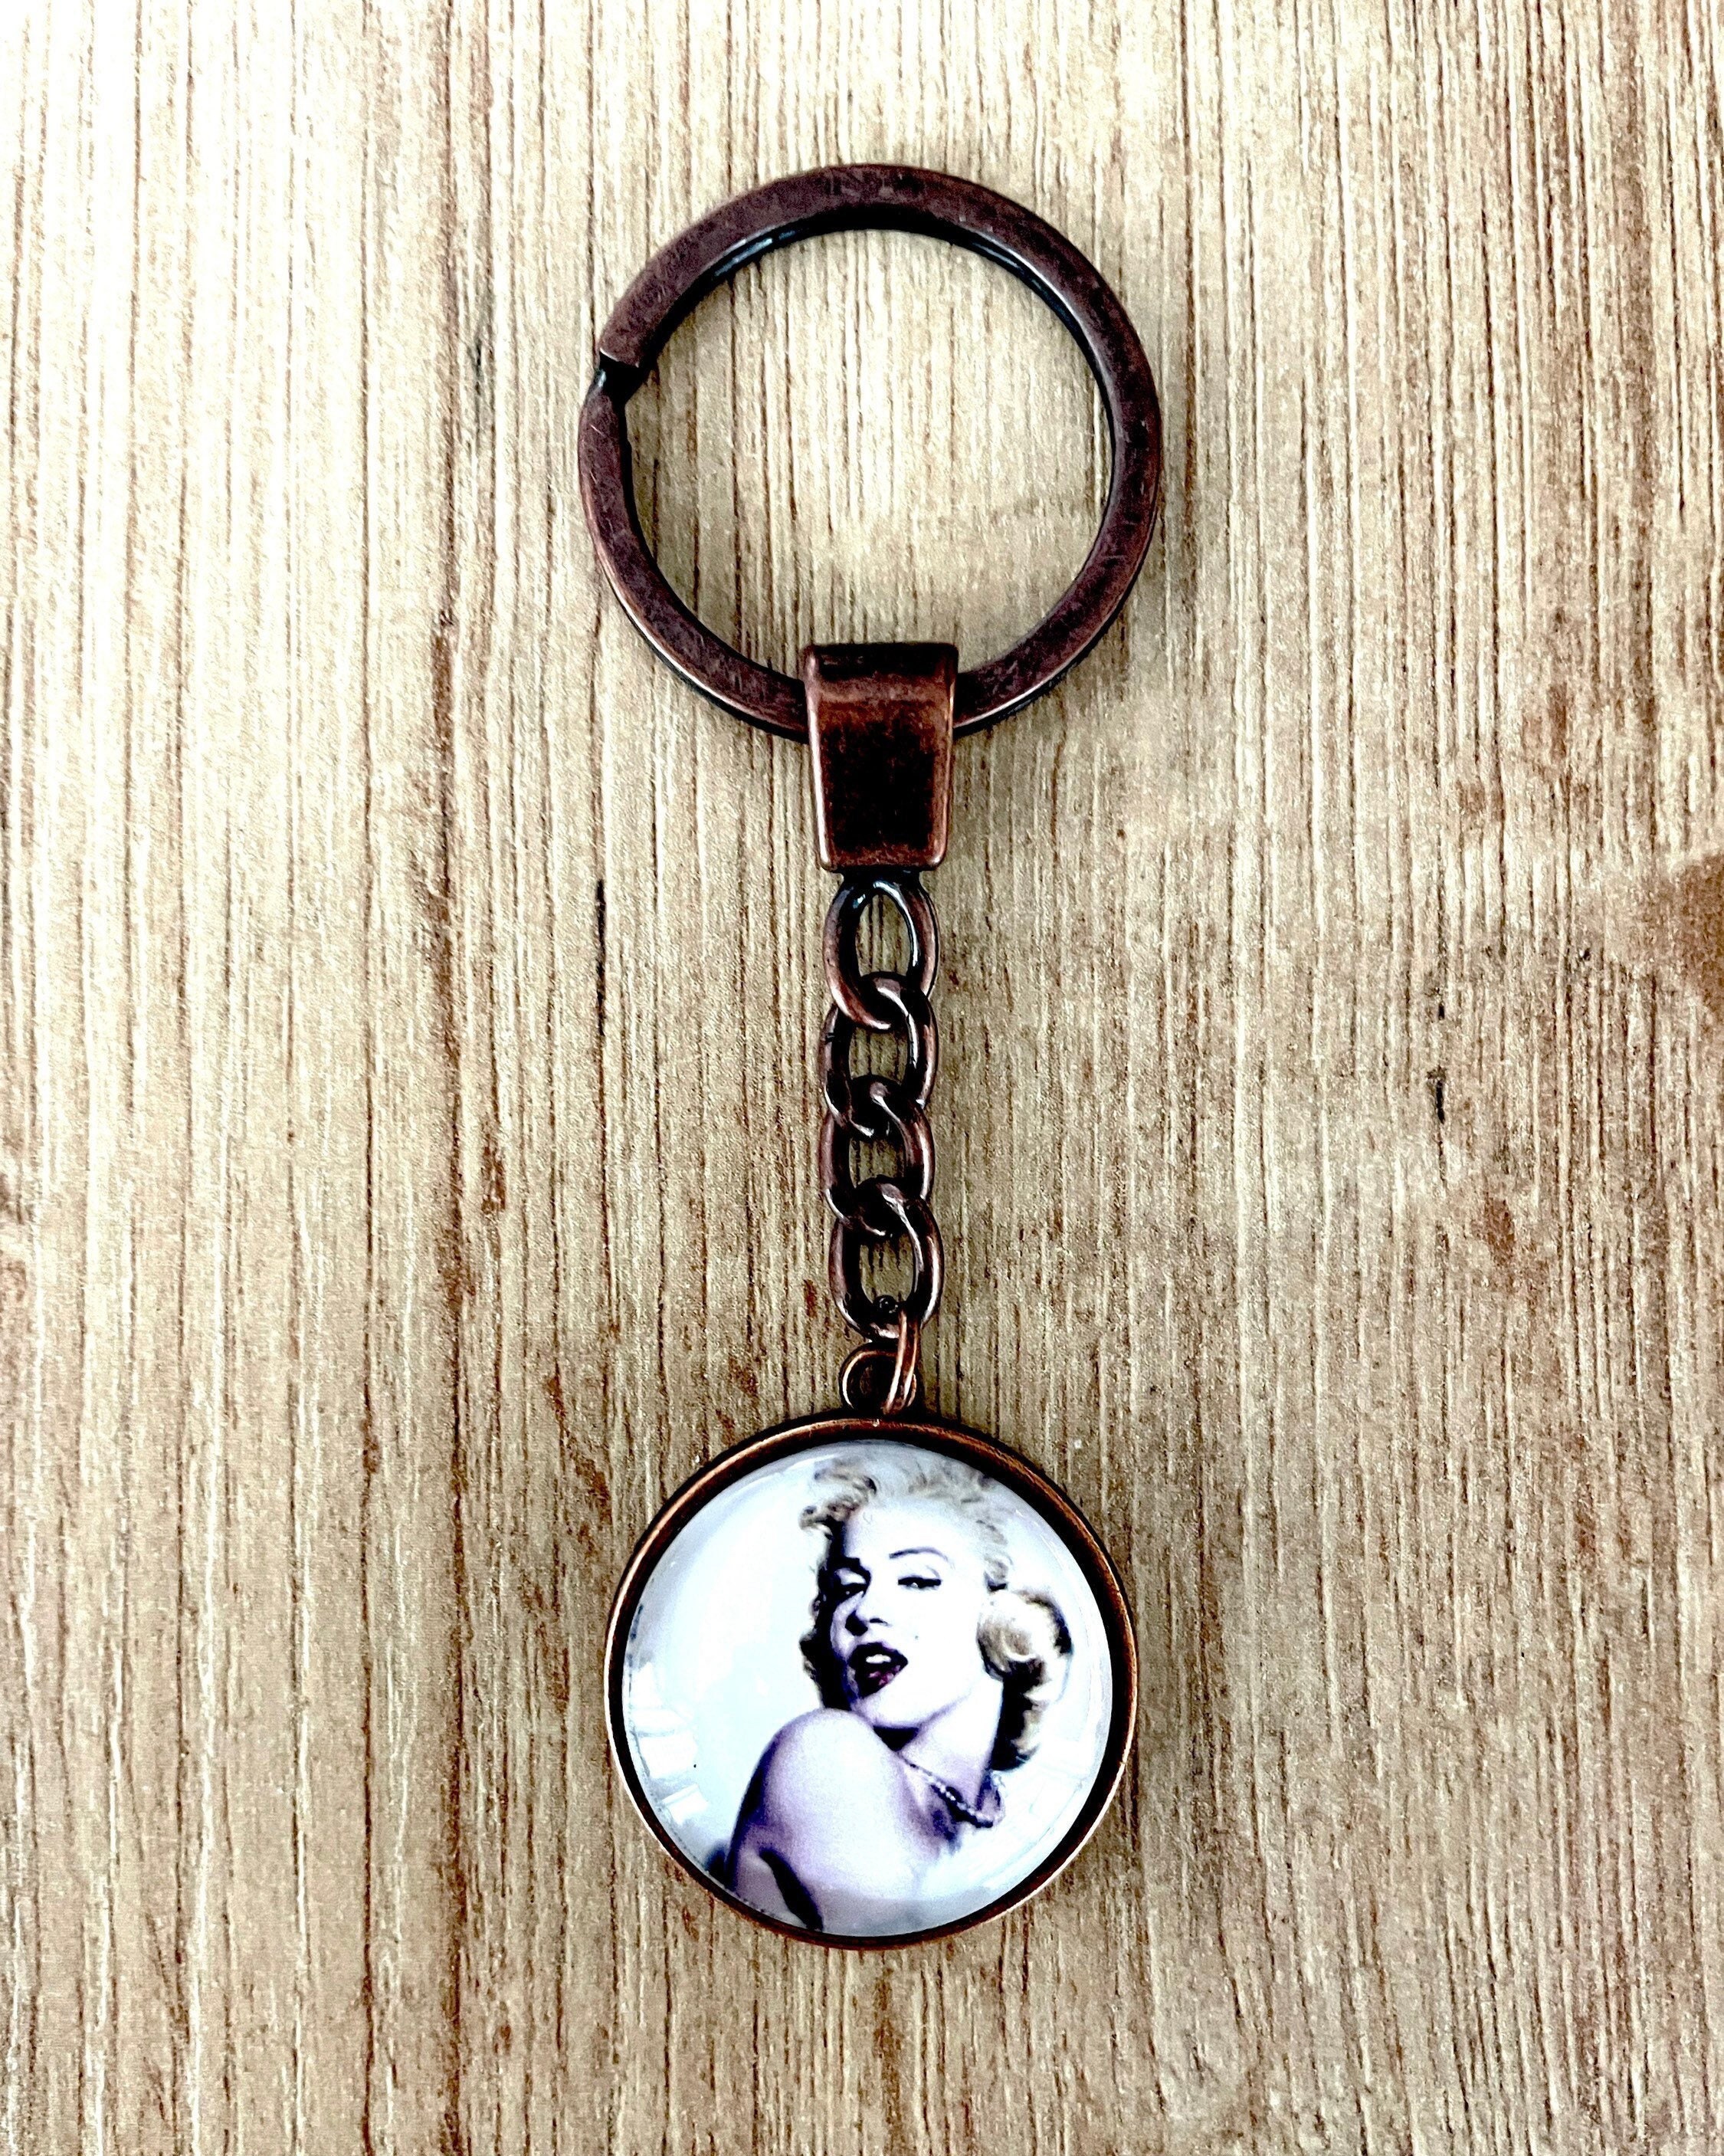 Fashion Zinc Alloy Keychain For Men, Vintage Steam Punk Keychain